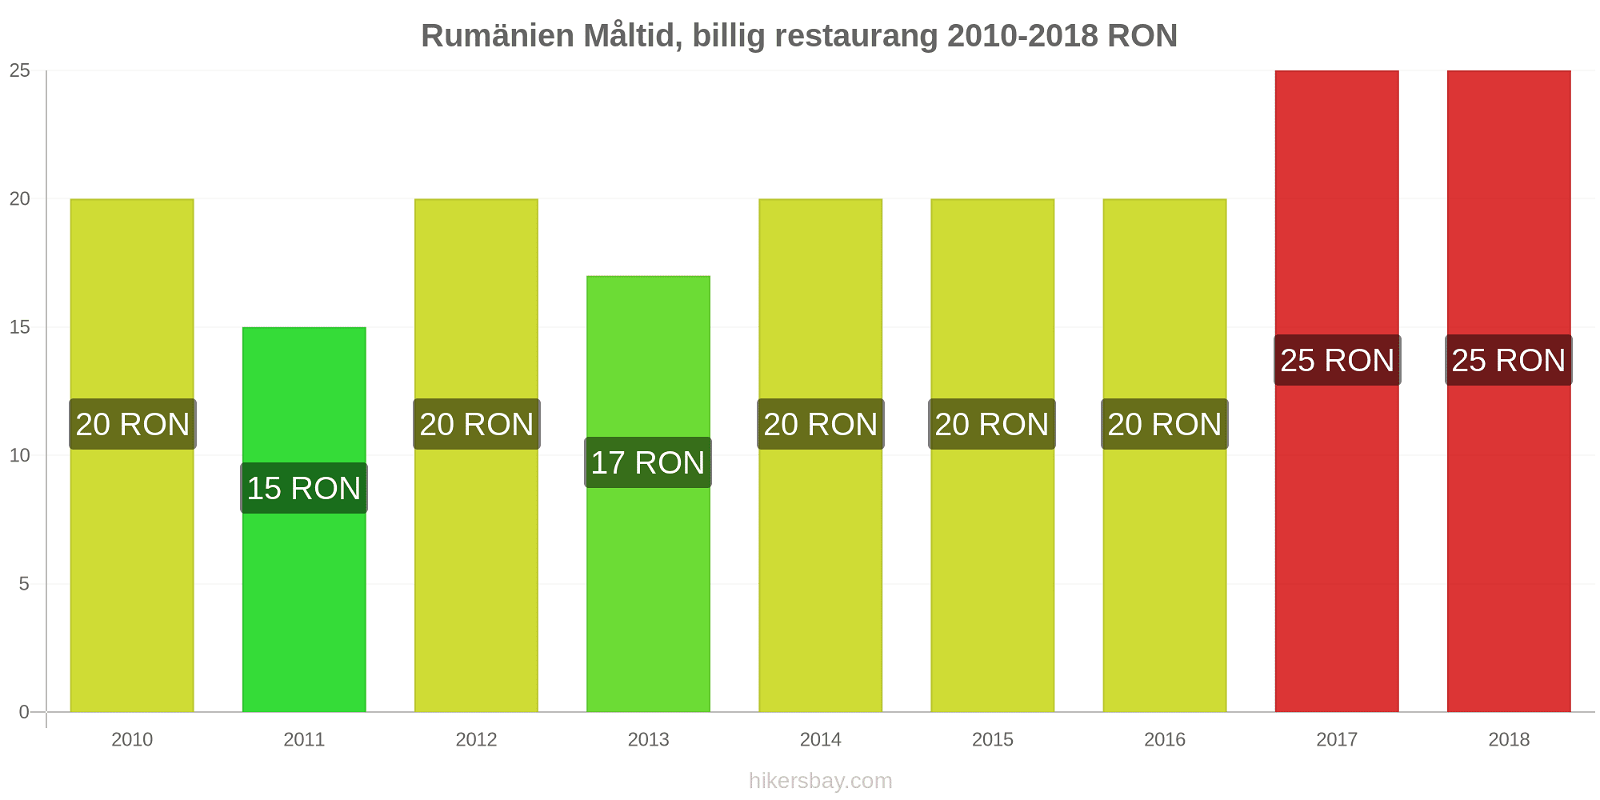 Rumänien prisändringar Måltid i en billig restaurang hikersbay.com